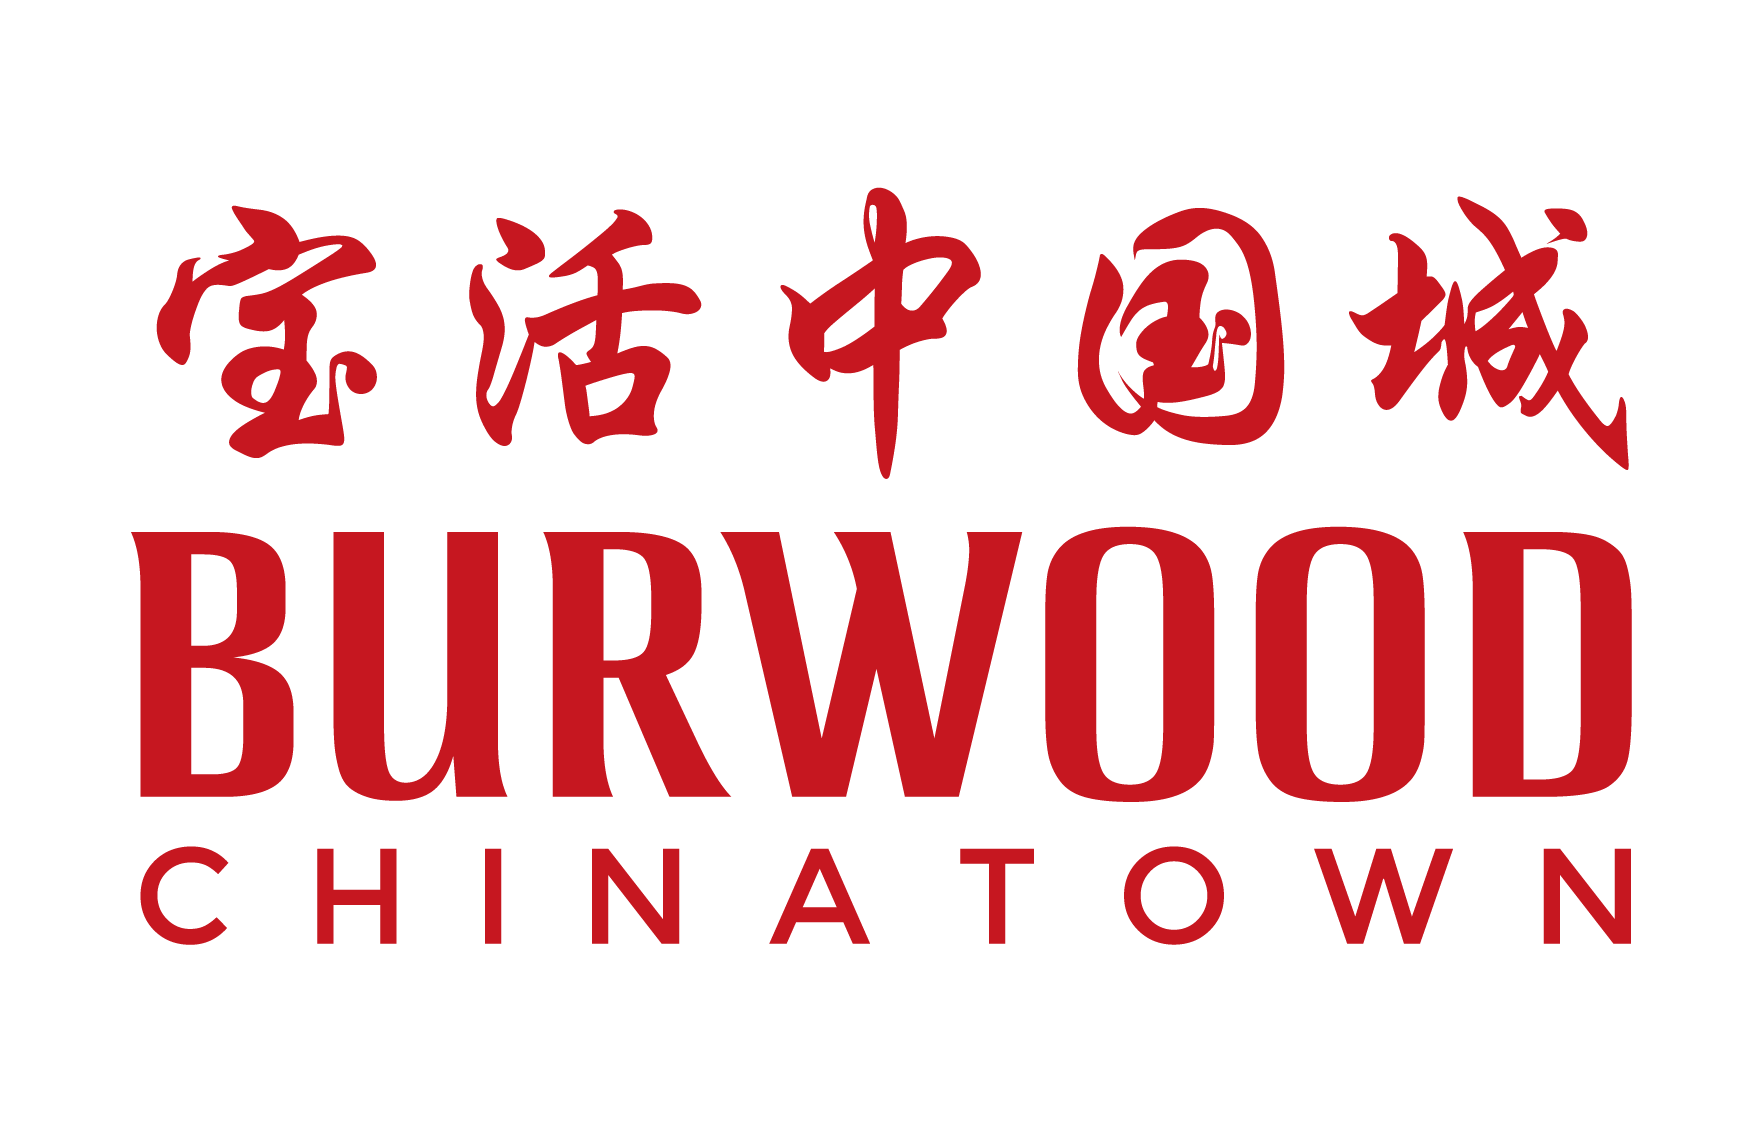 Burwood Chinatown